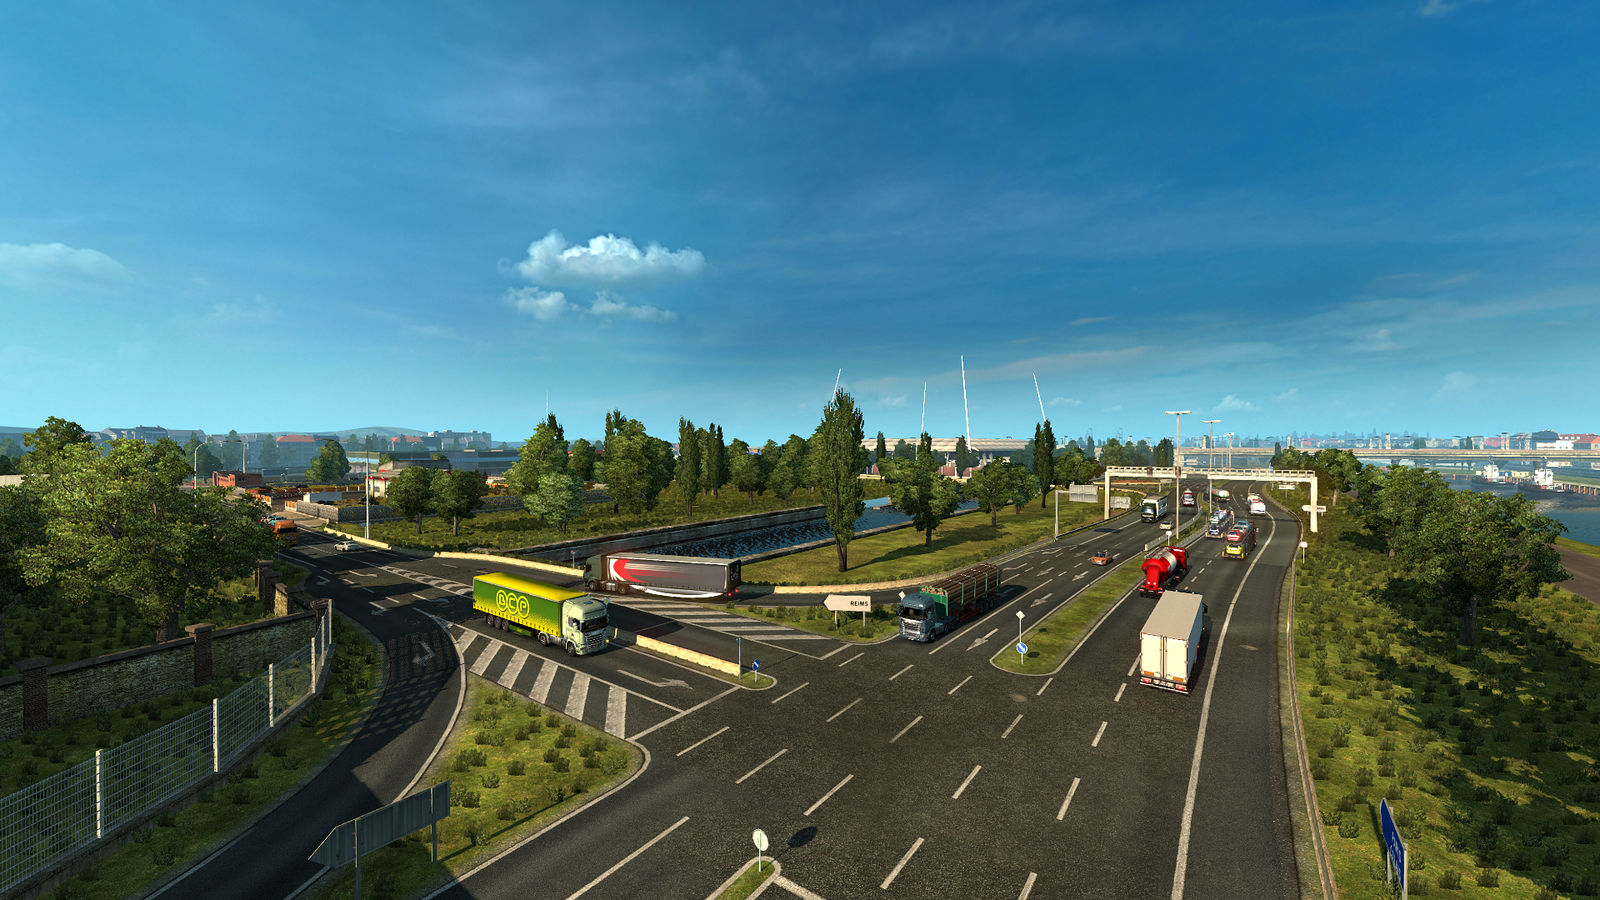 Euro Truck Simulator 2 (Steam) RU/CIS